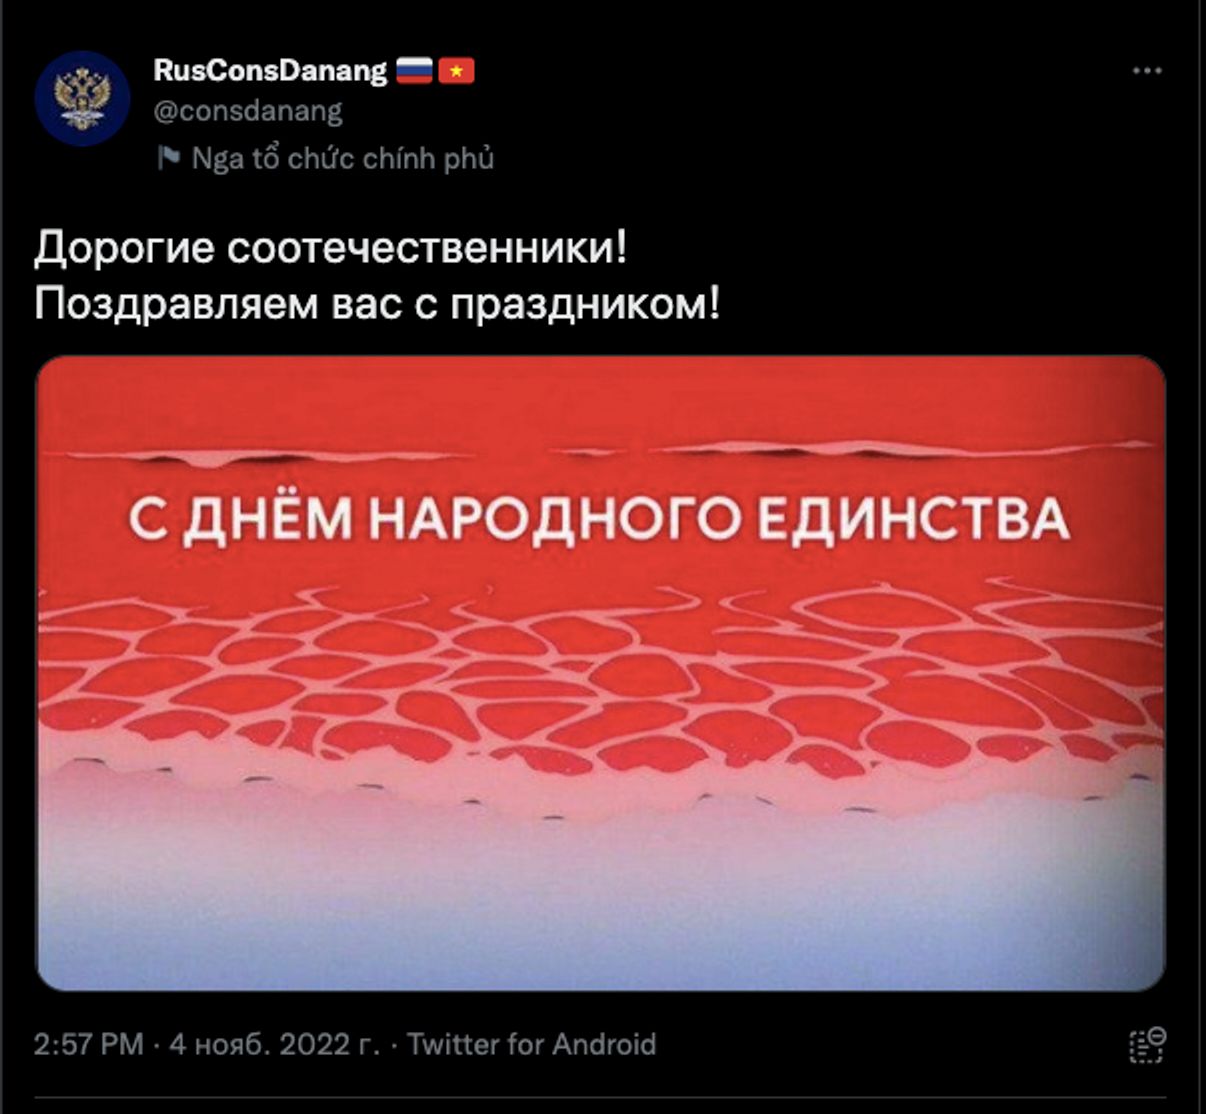 Консульство РФ во Вьетнаме поздравило россиян с Днем народного единства кадром из аниме с превращением человечества в кровавый бульон